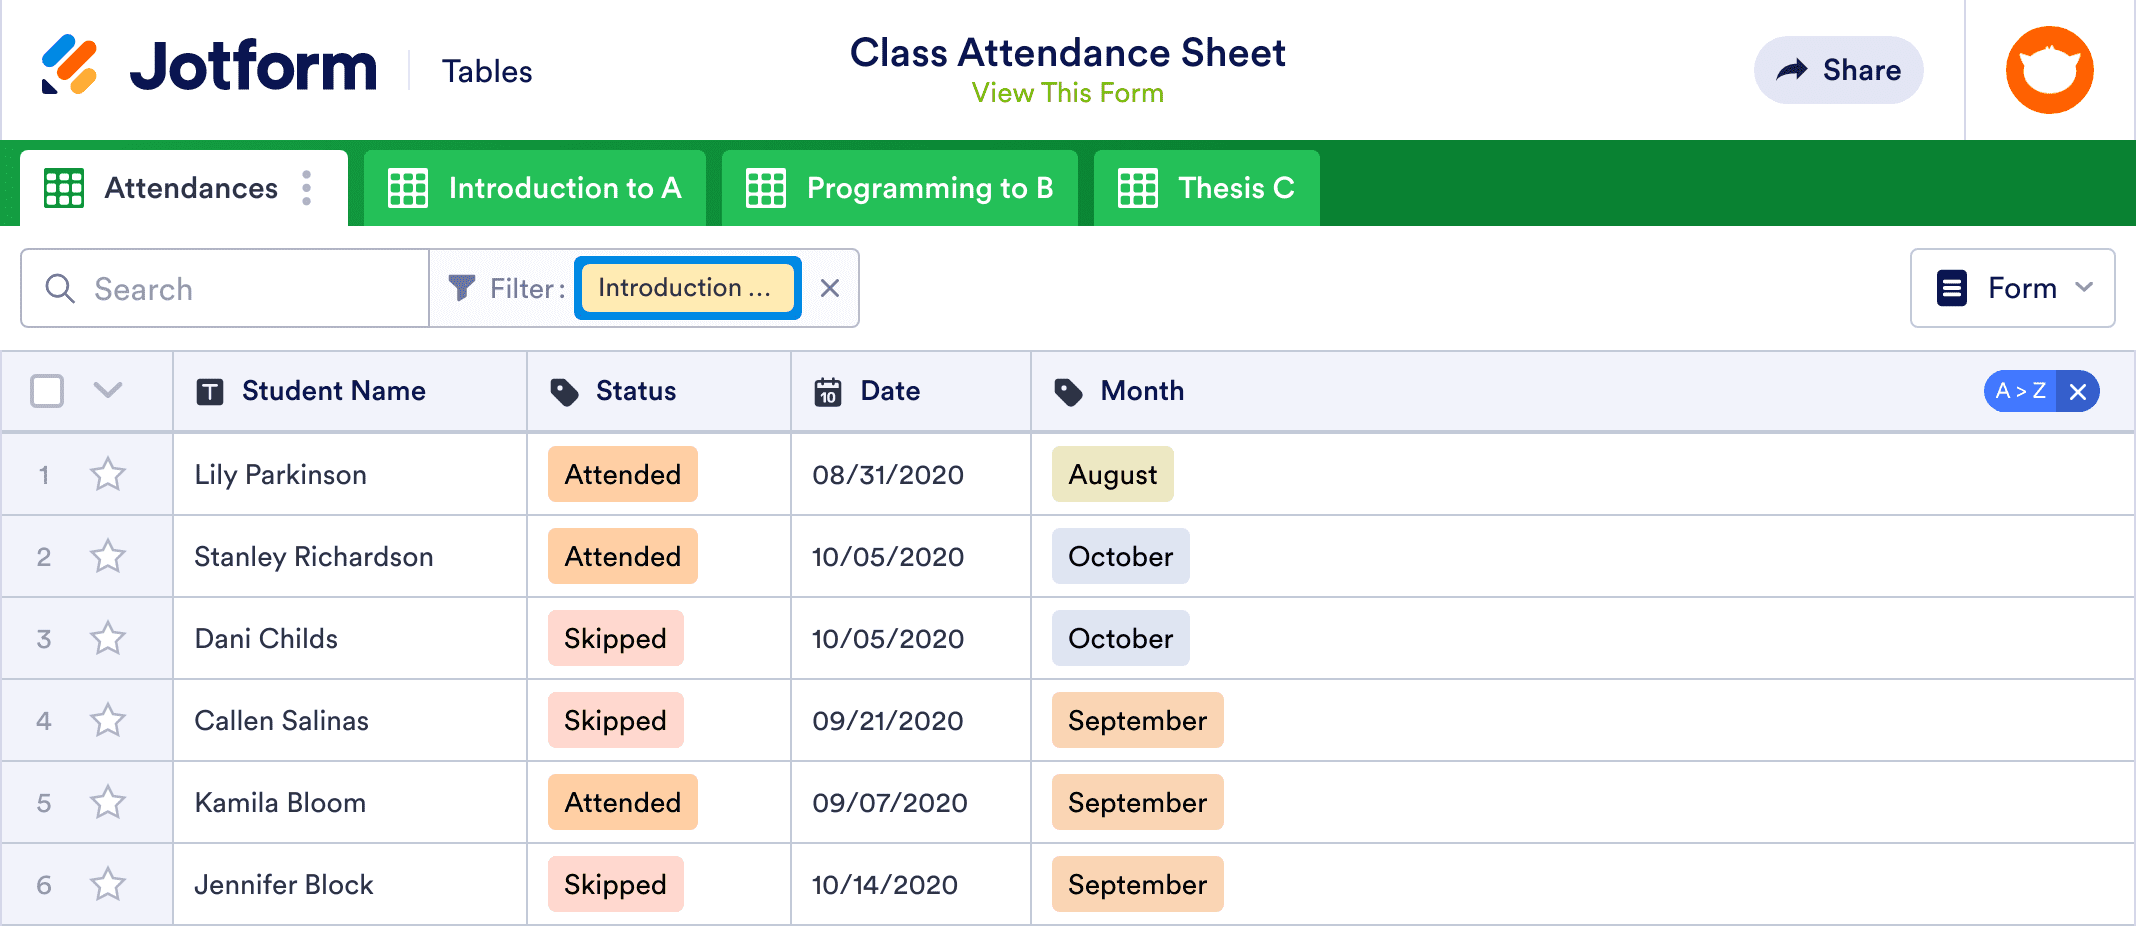 Class Attendance Sheet